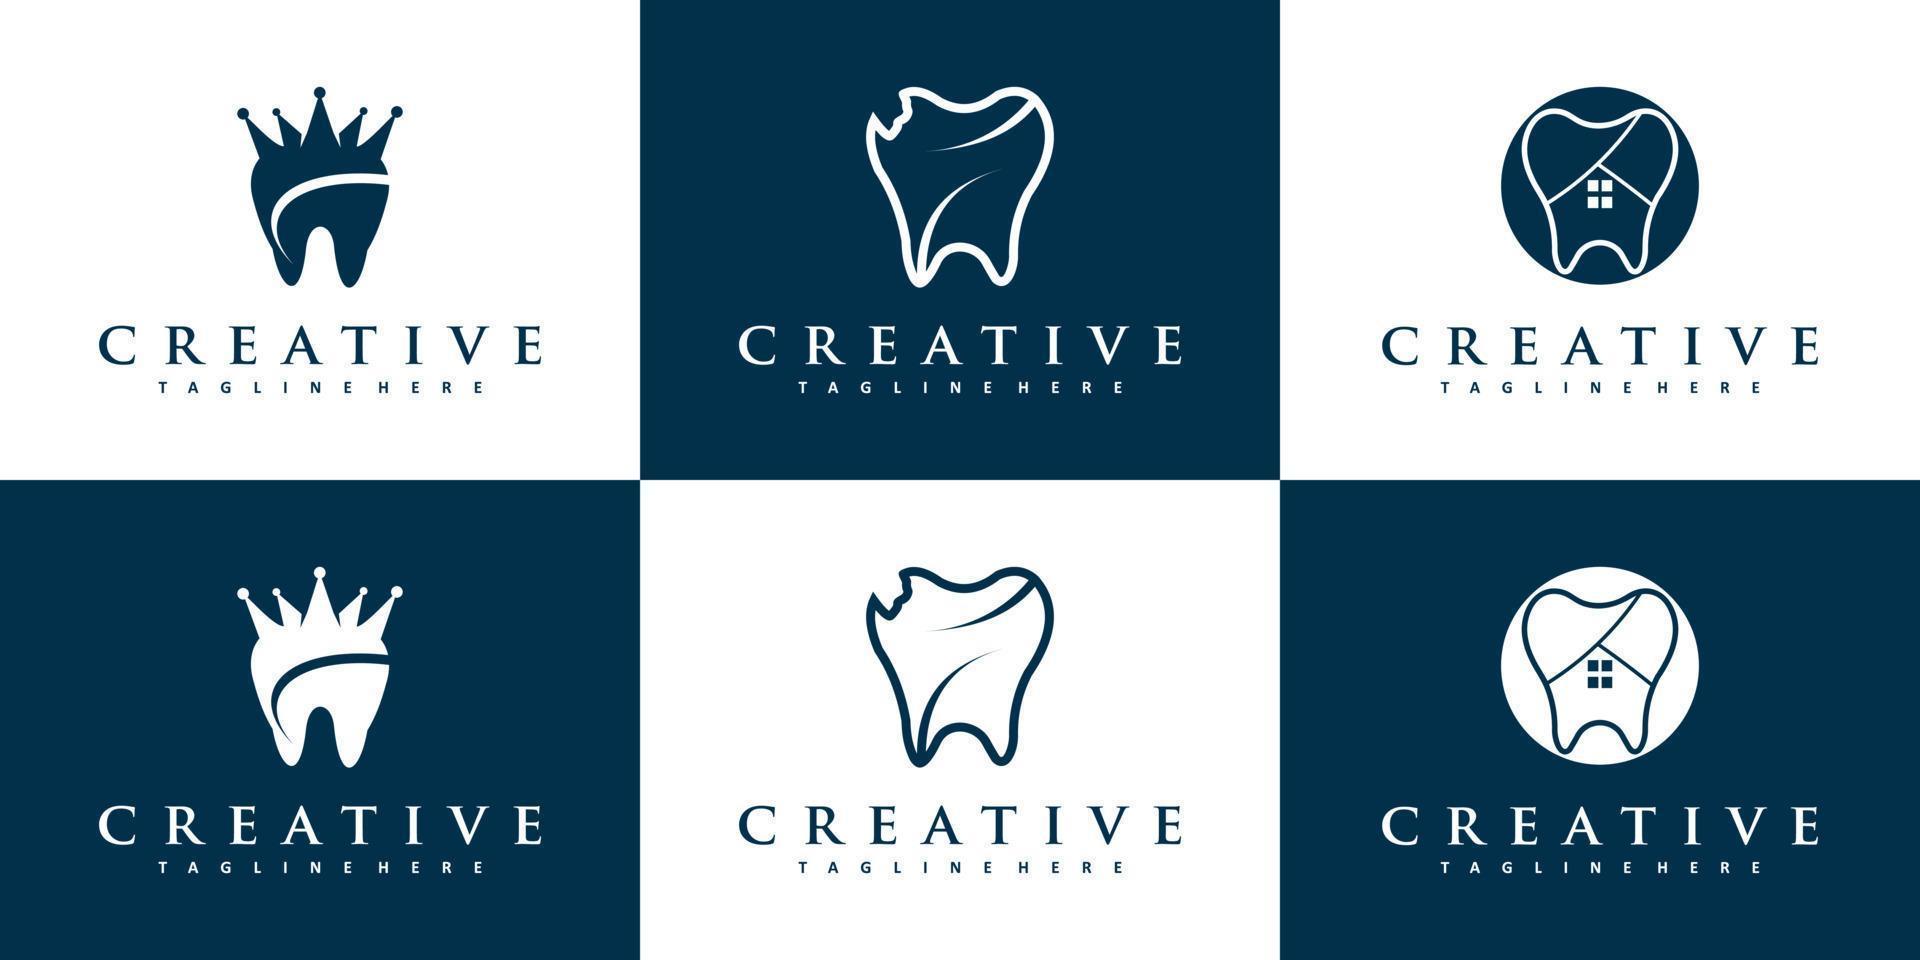 conceito de logotipo dental com vetor premium de estilo único e criativo